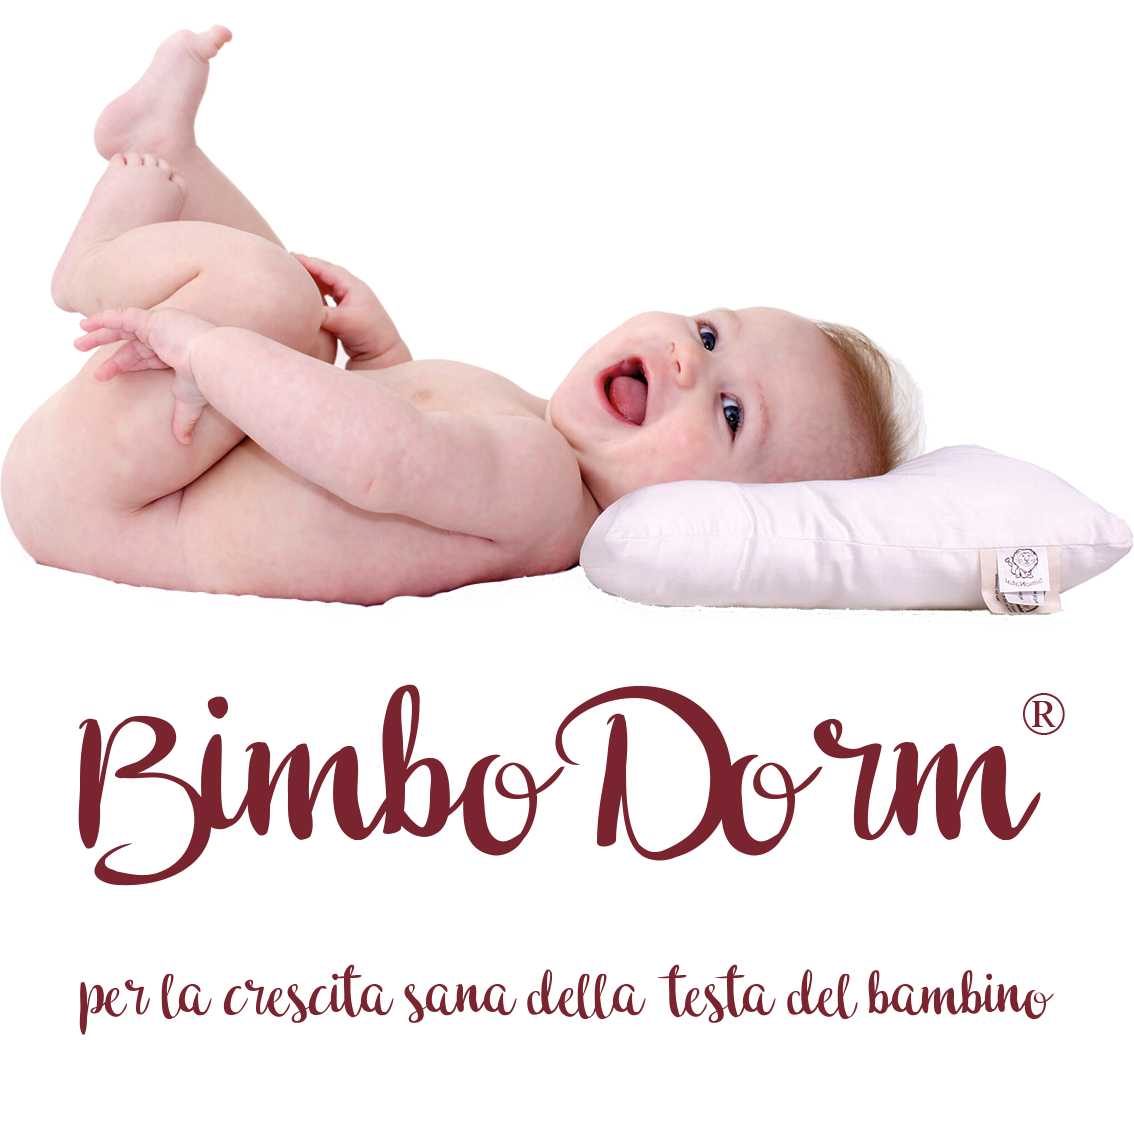 BimboDorm® per la crescita sana della testa del bambino